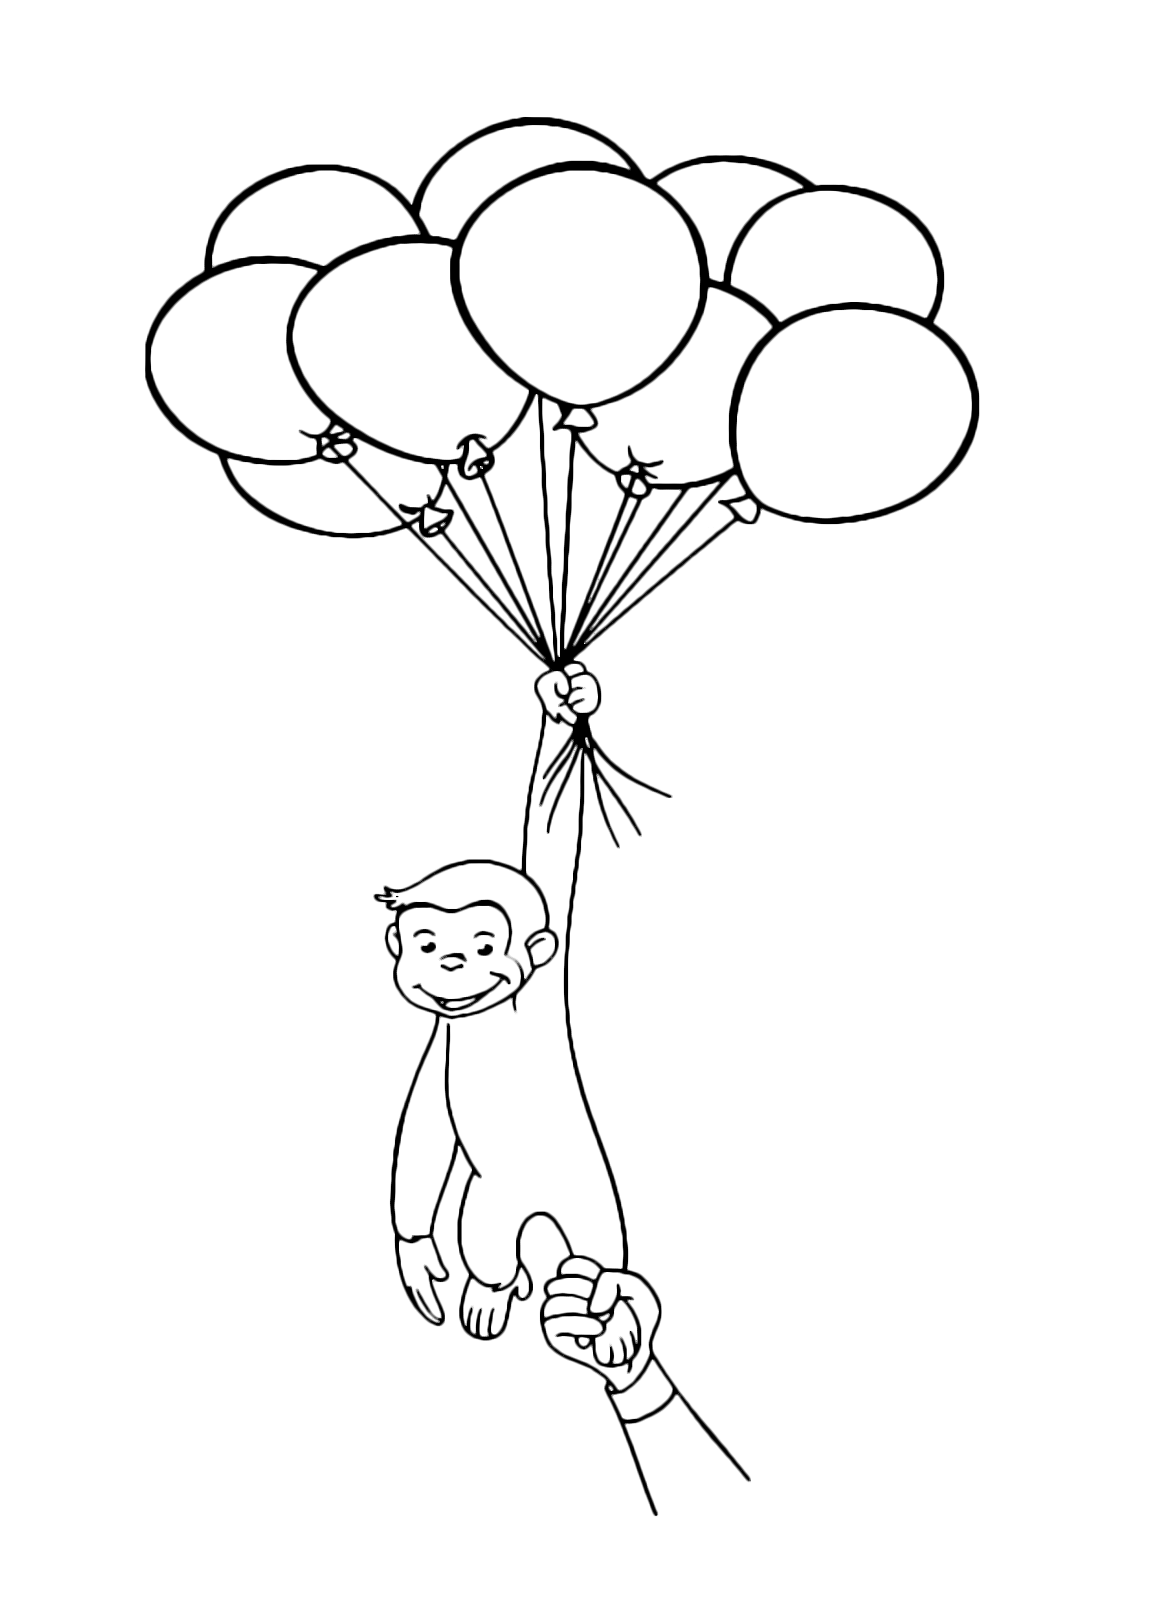 Curious George Balloon